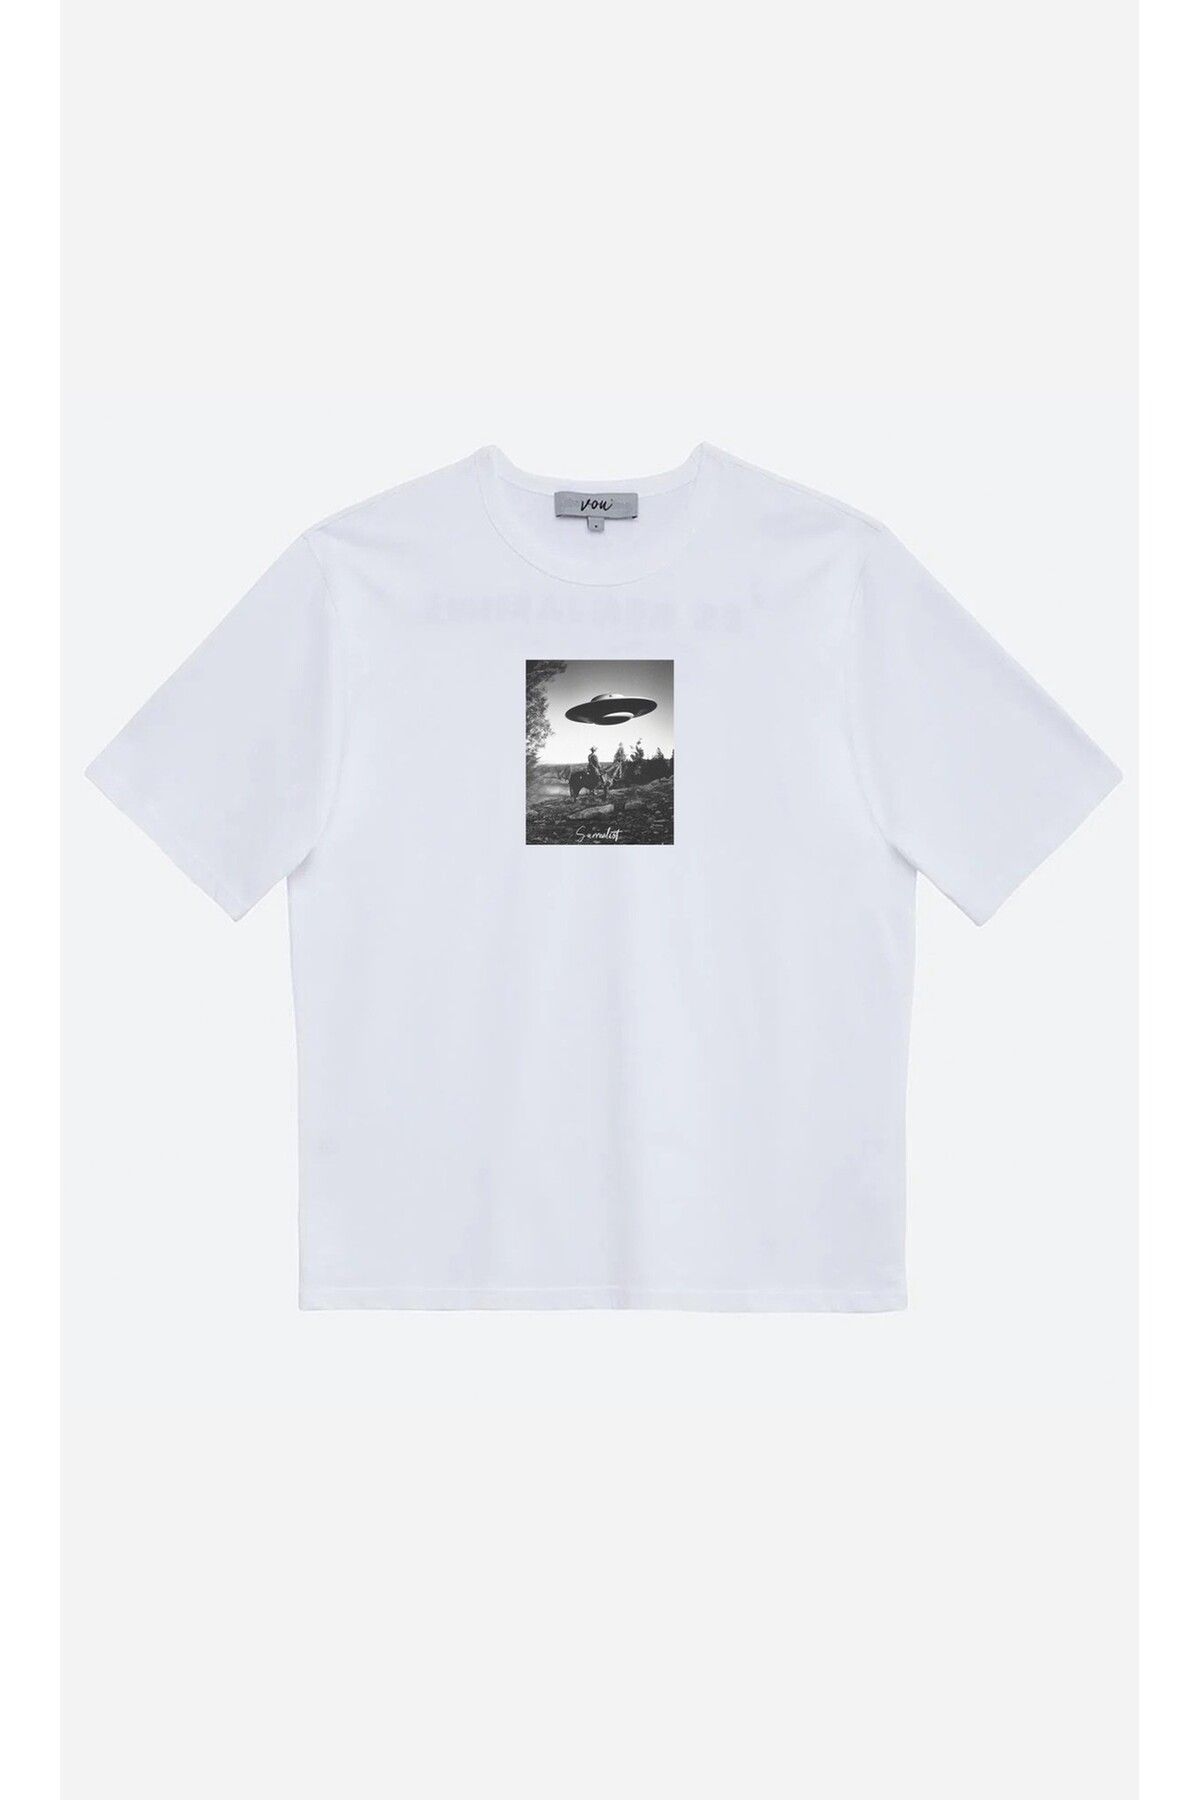 VOU 1040- Surrealist Oversize Unisex T-Shirt